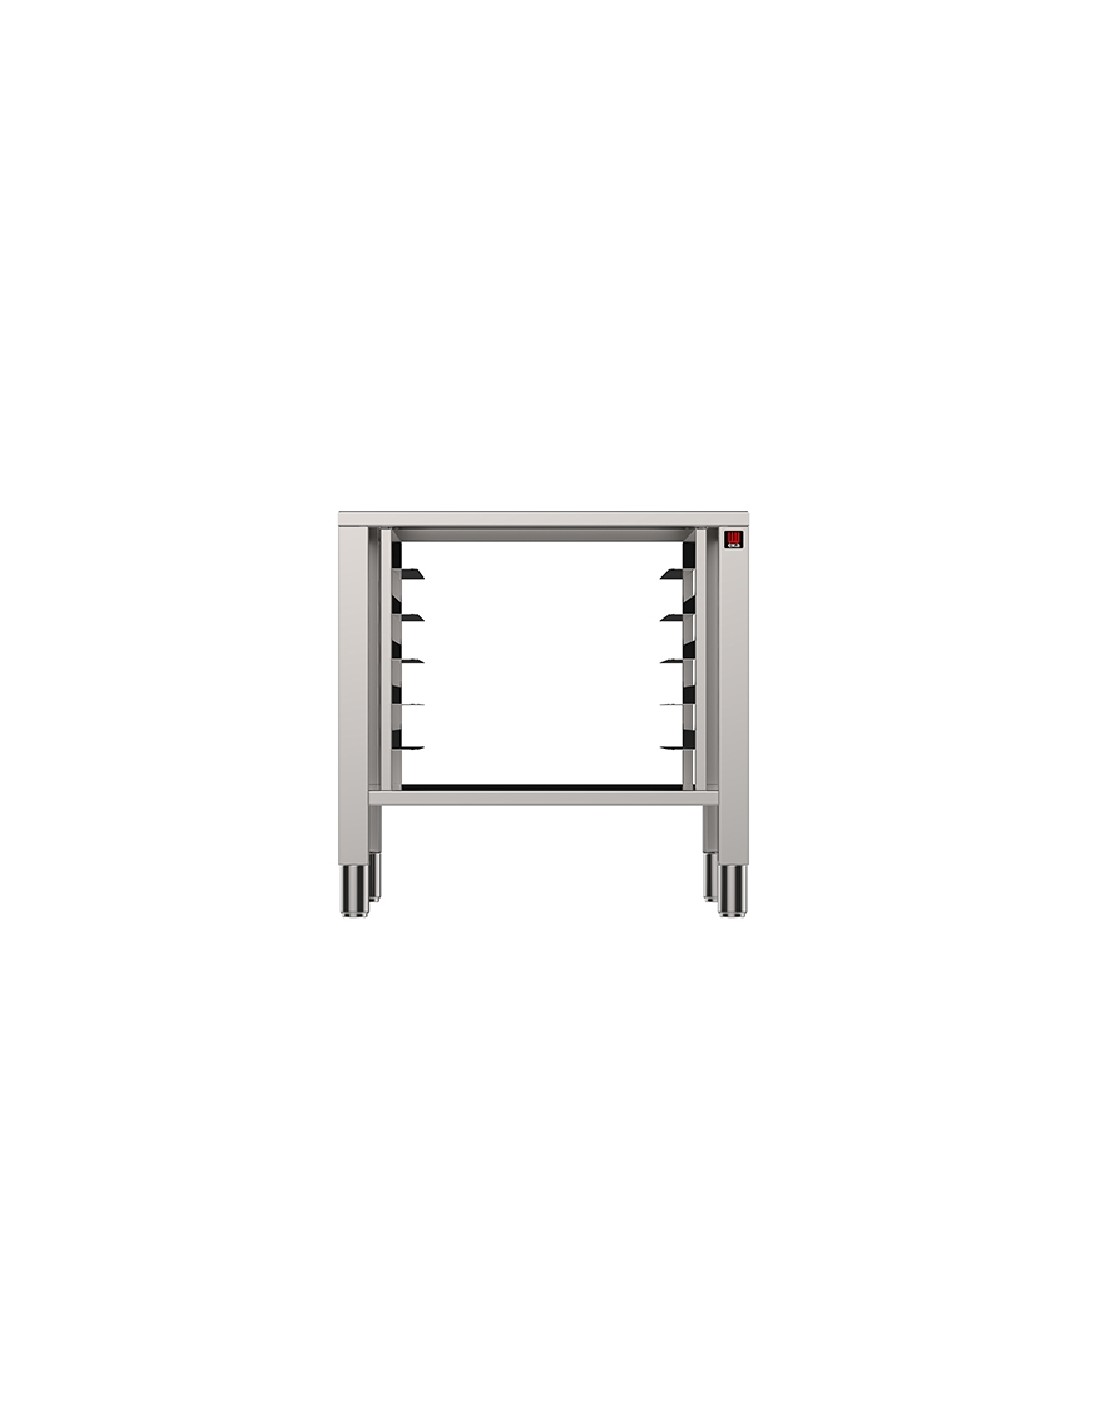 Tavolo fisso - Acciaio inox AISI 430 - Supporti per forni 5/7/11 teglie - Dimensioni cm 73 x 60 x 77h